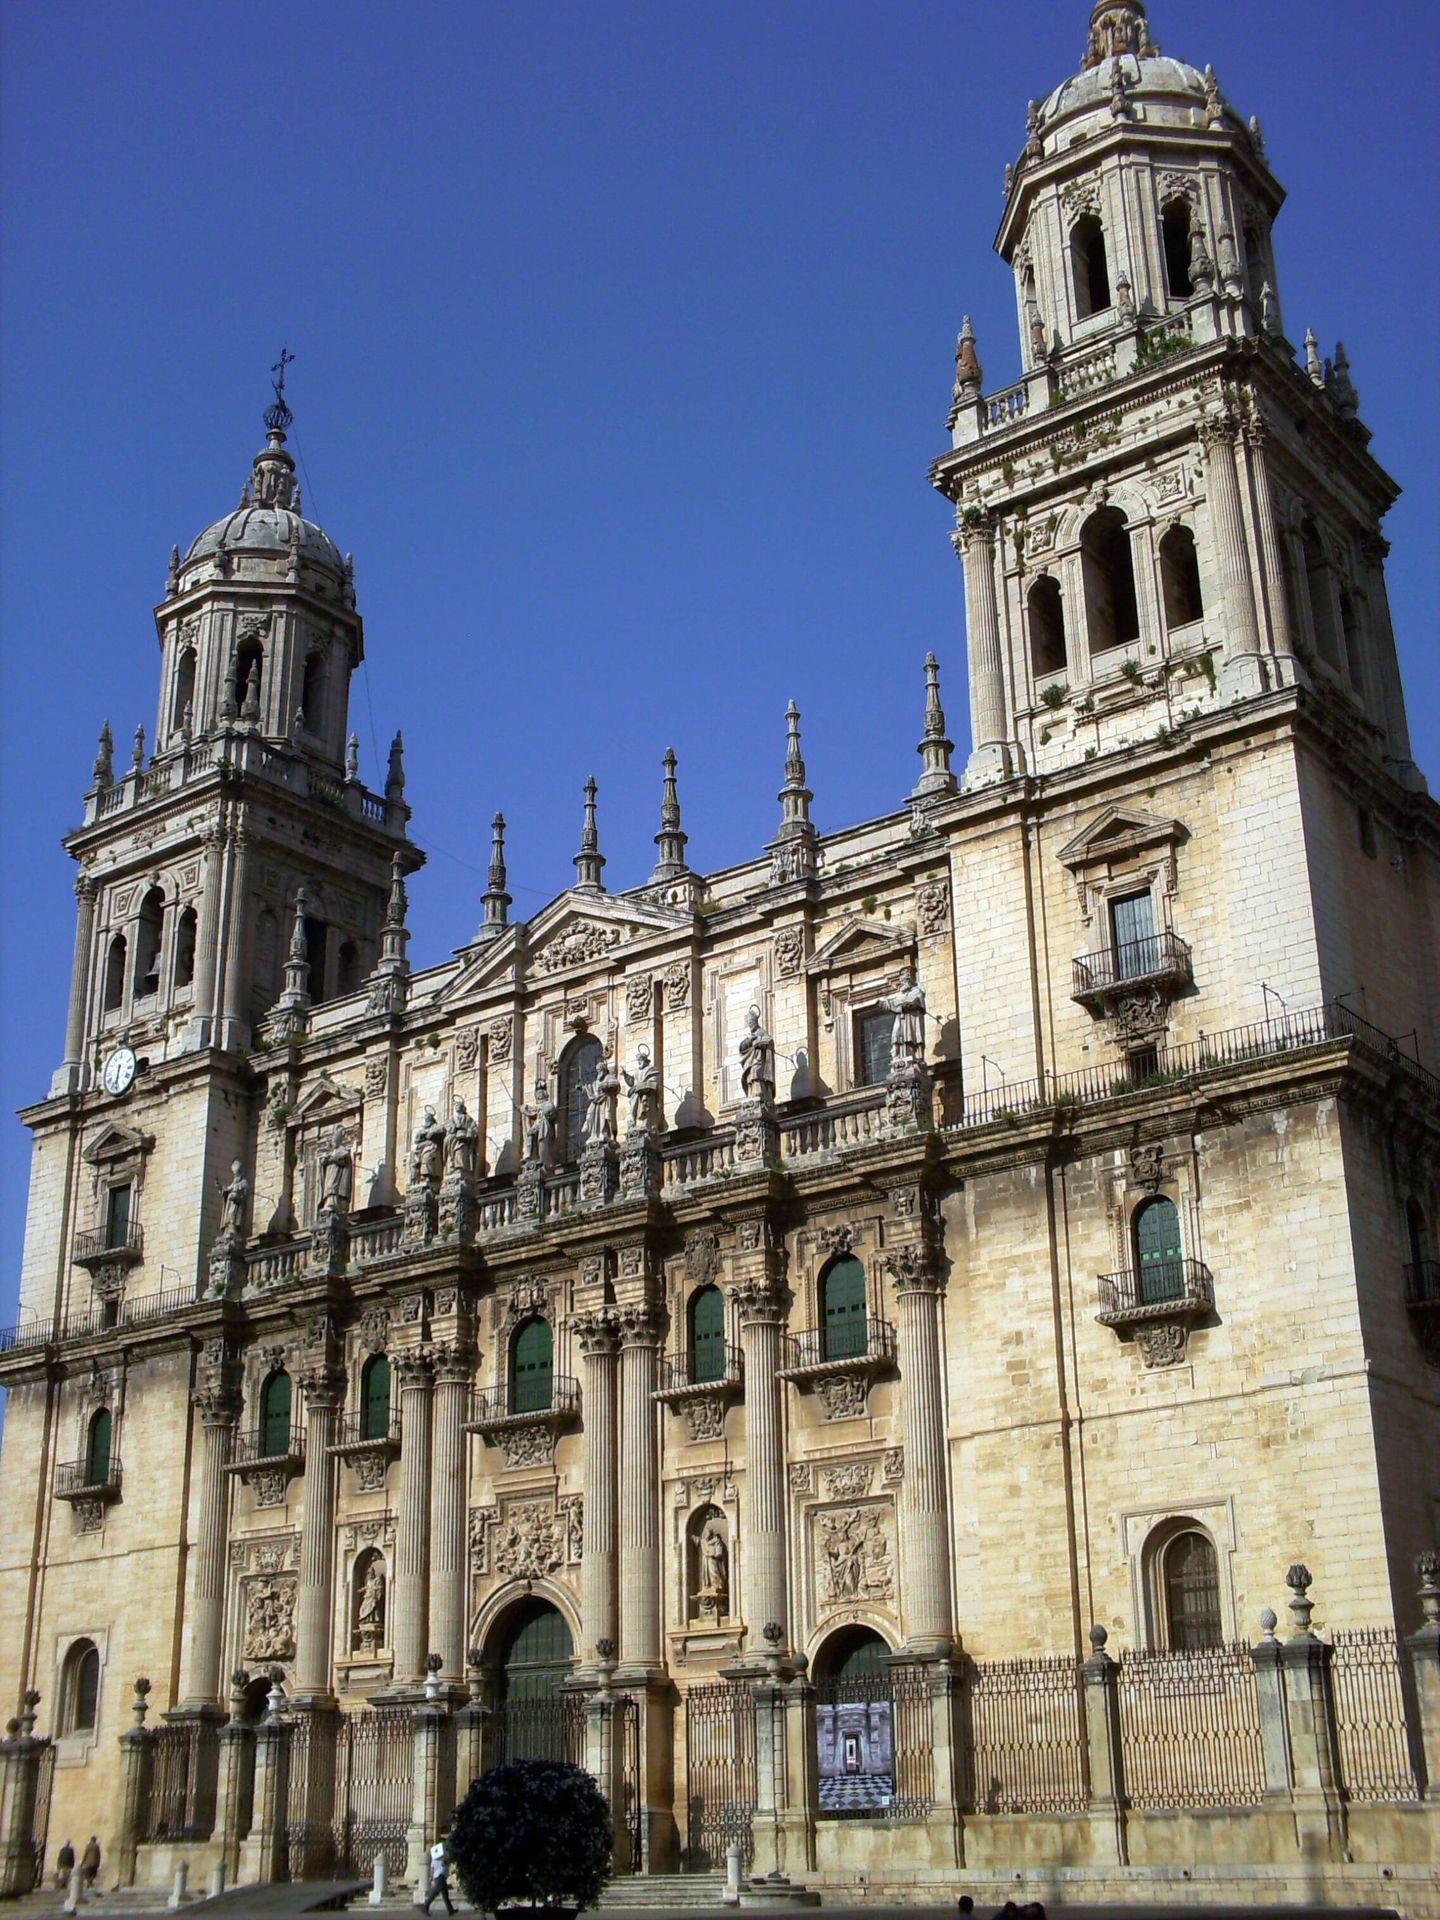 Vista del exterior de la catedral de Jaén. (Wikimedia Commons)